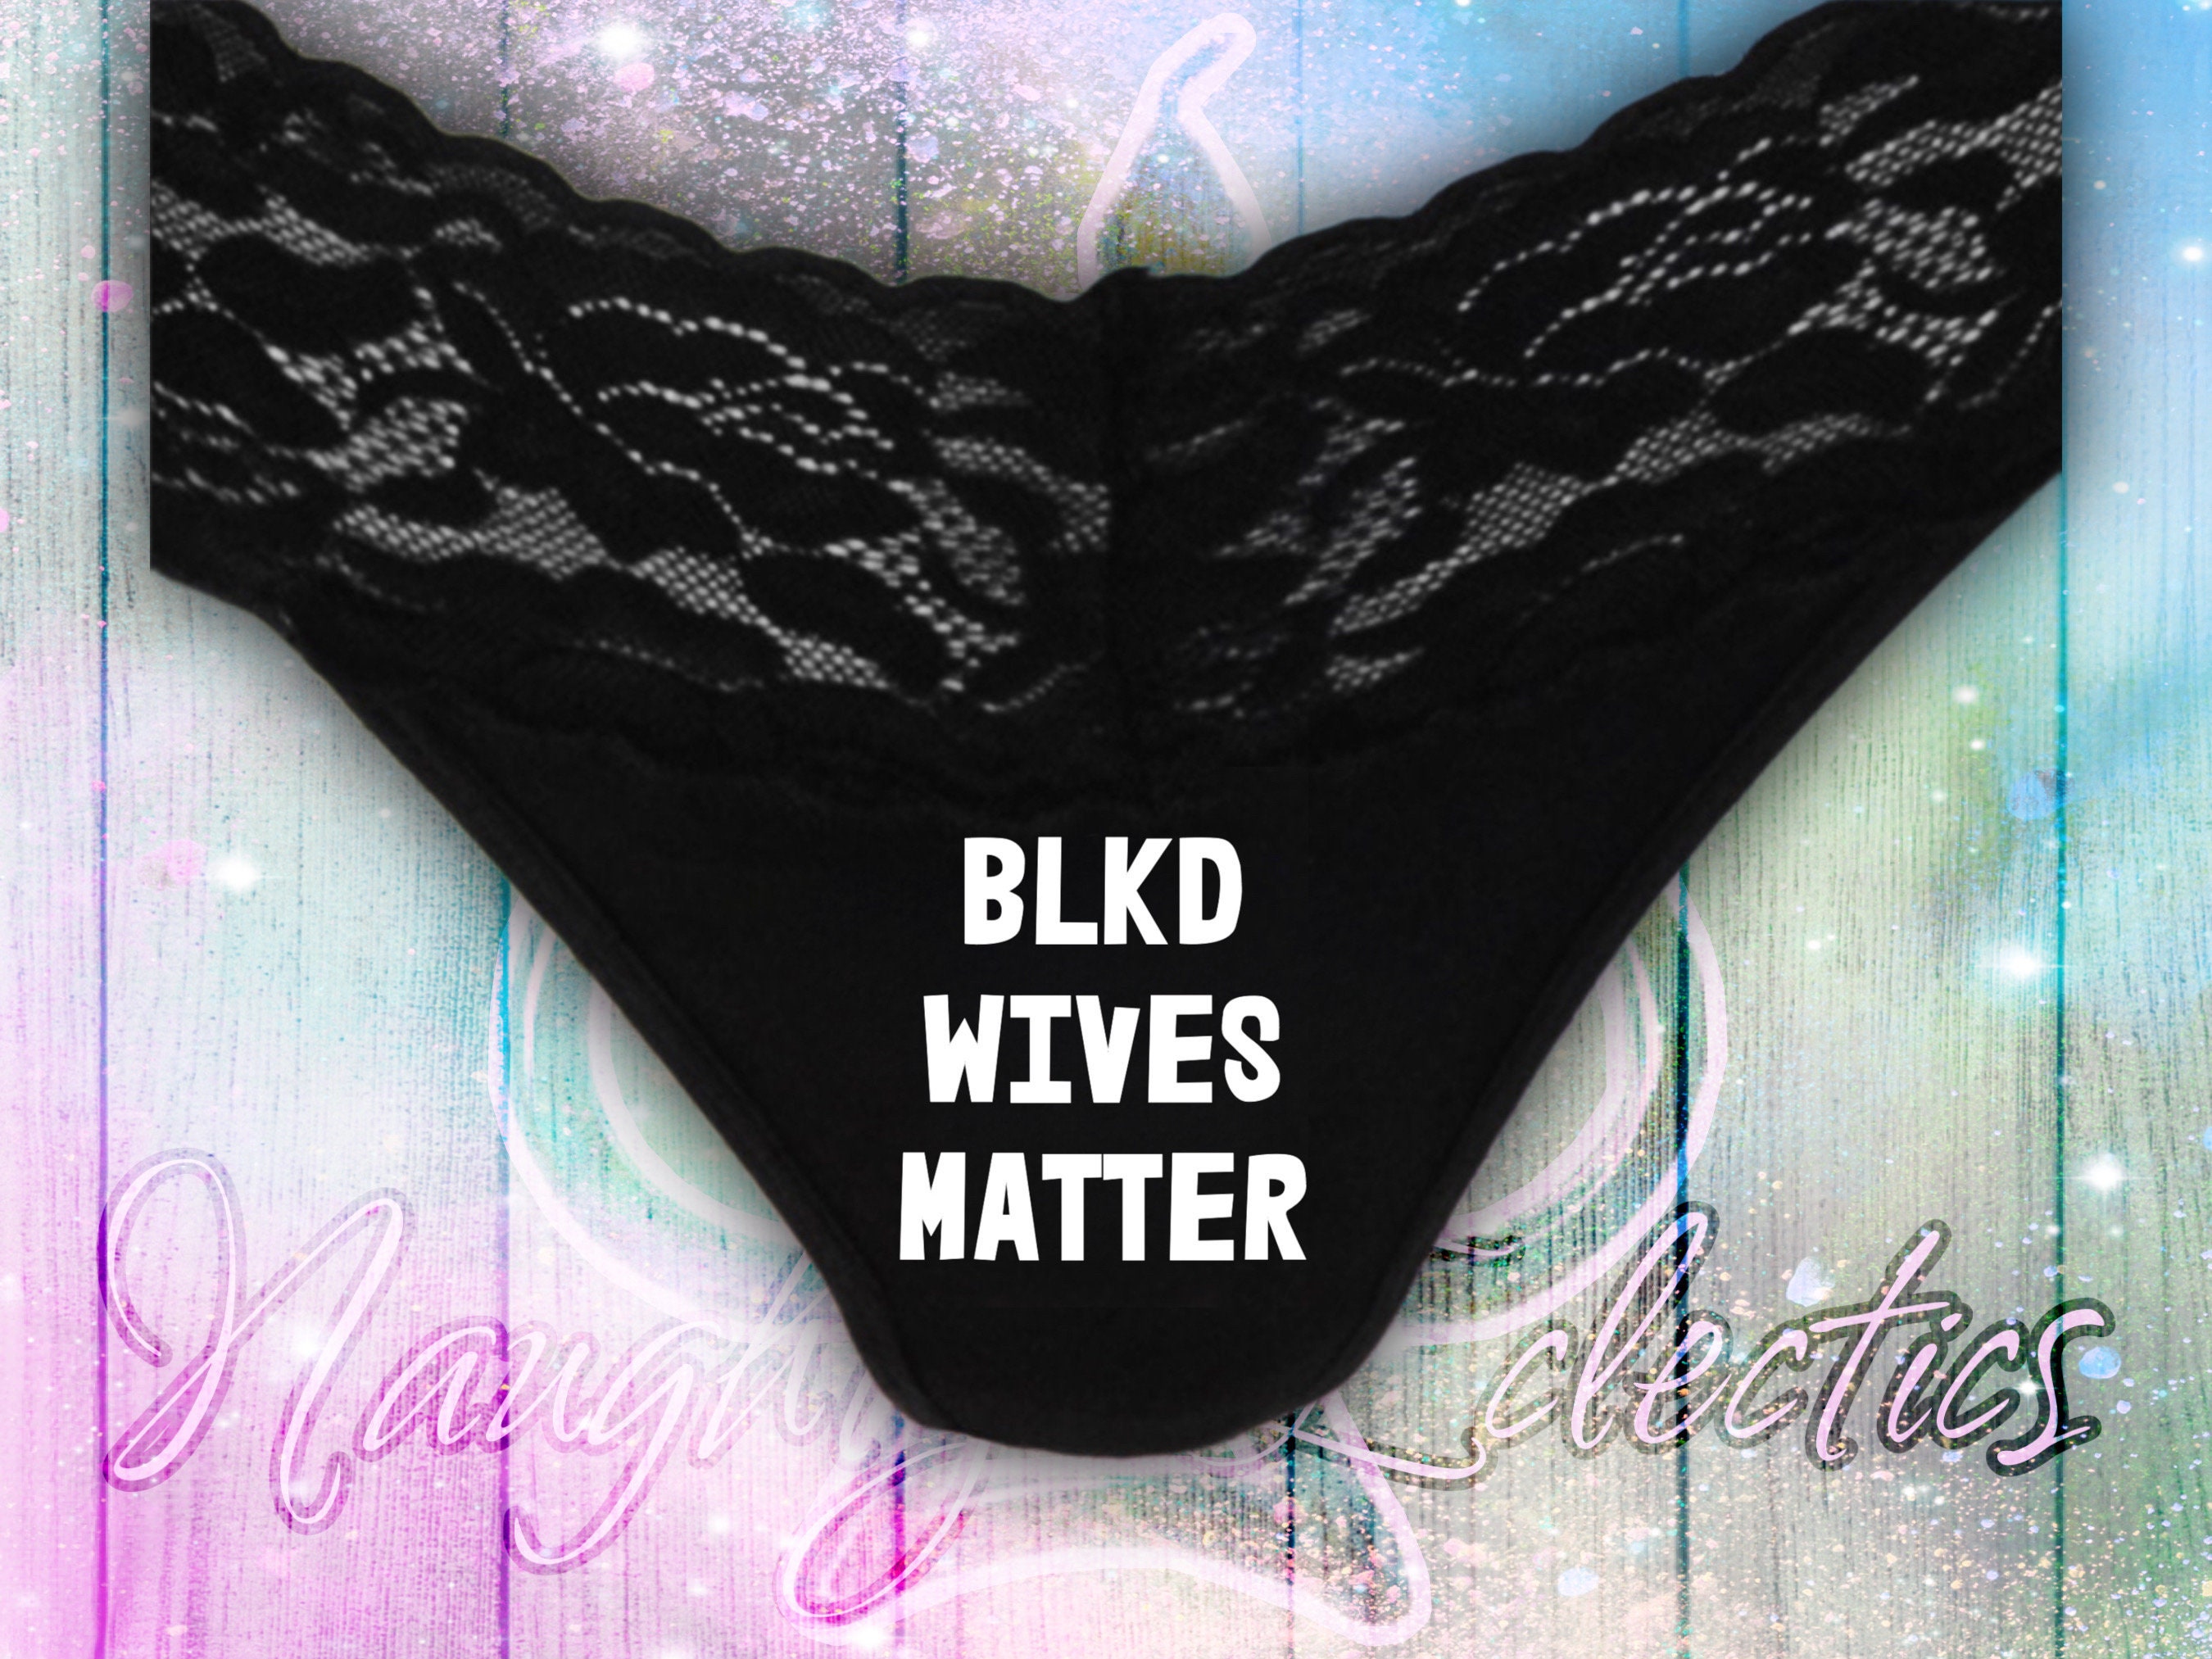 BLKD Wives Matter Thong Slutwear : Slutgear 